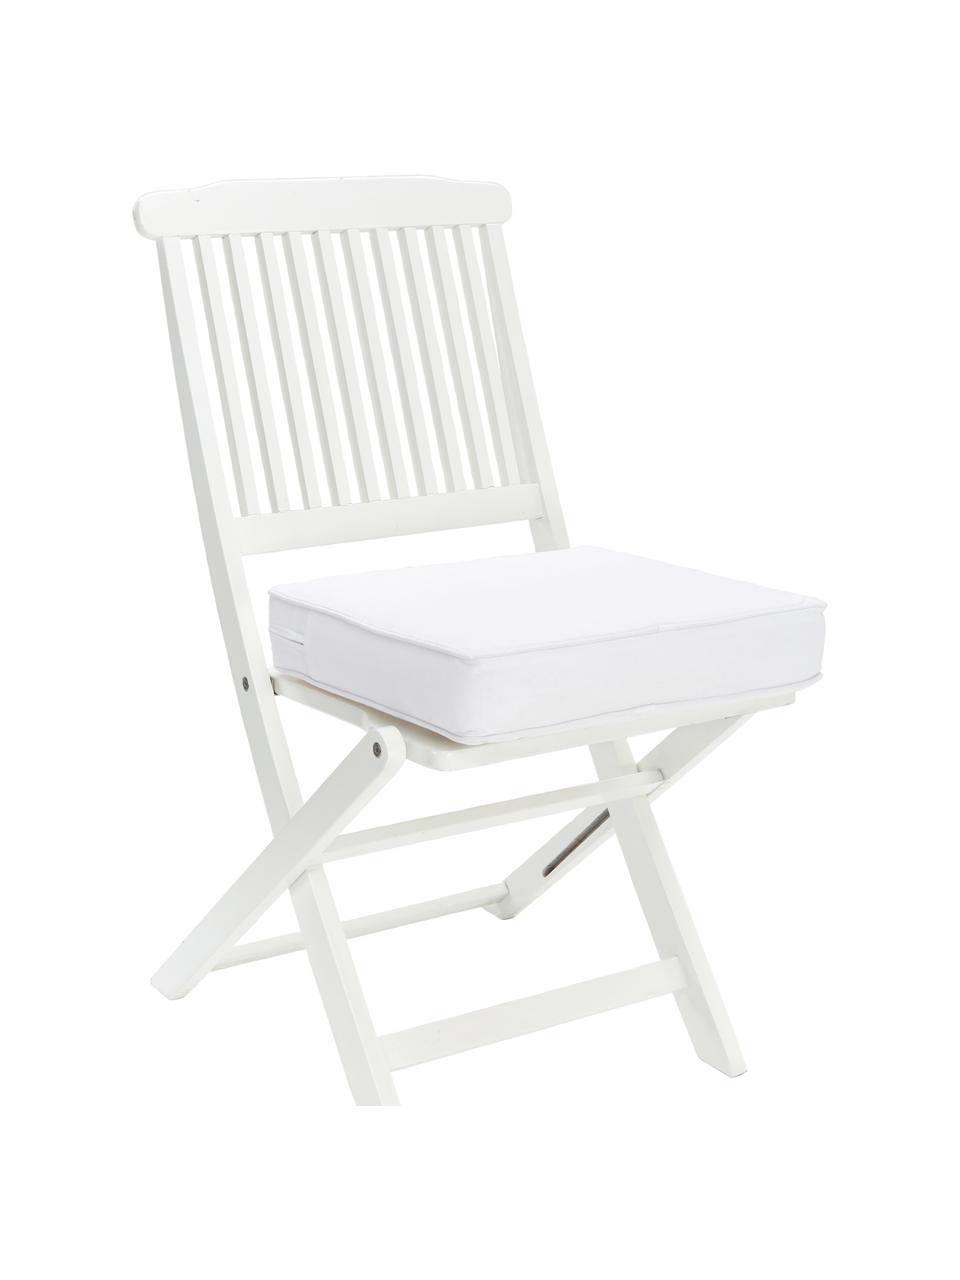 Hoog katoenen stoelkussen Zoey in wit, Wit, B 40 x L 40 cm